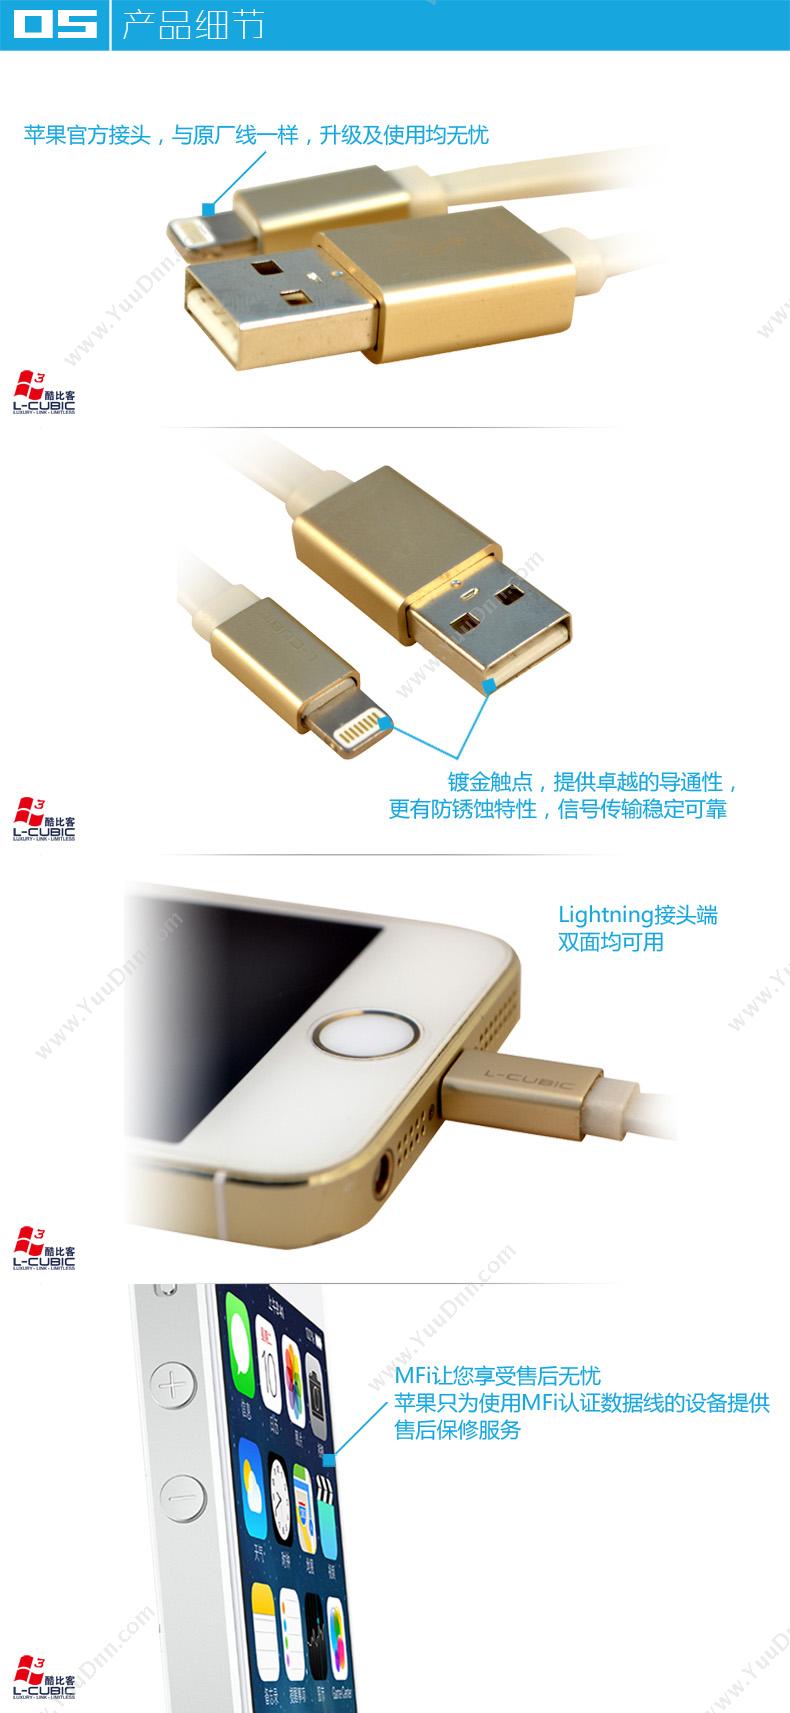 酷比客 L-Cubic LCIMAPSBMCWHGD-2M  苹果数据线 金属外壳/白色扁线 金色 1根 USB AM-Lightning用于iPhone5 iPhone5s iPhone6 Plus iPad4 数据传输与充电 集线器